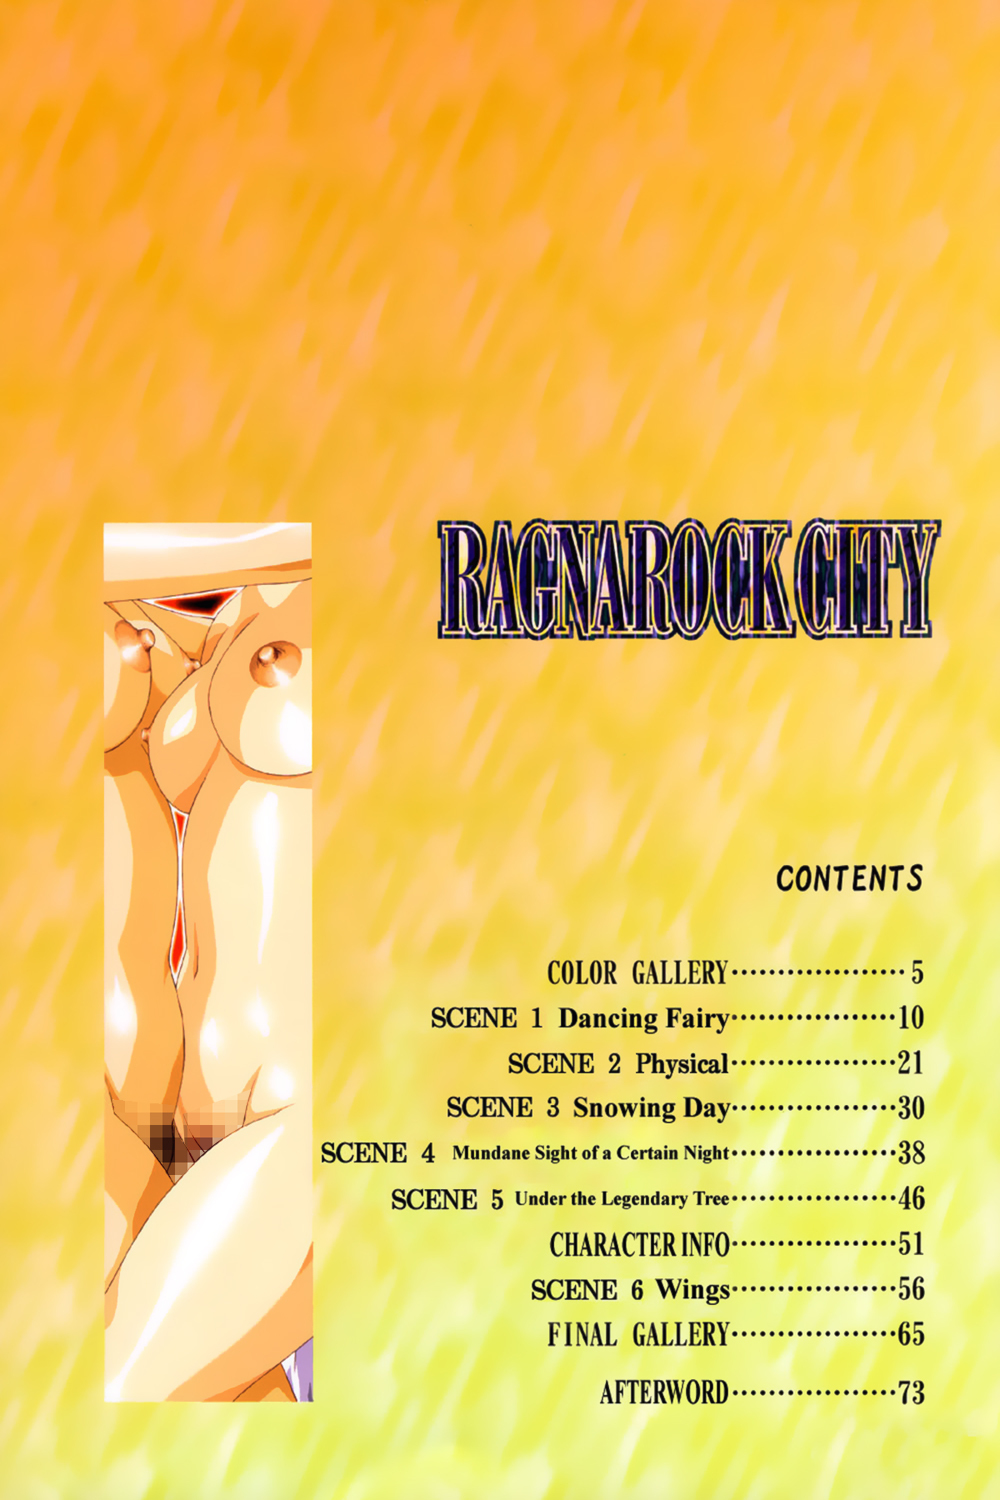 [Satoshi Urushihara] Ragnarock City [English] page 17 full